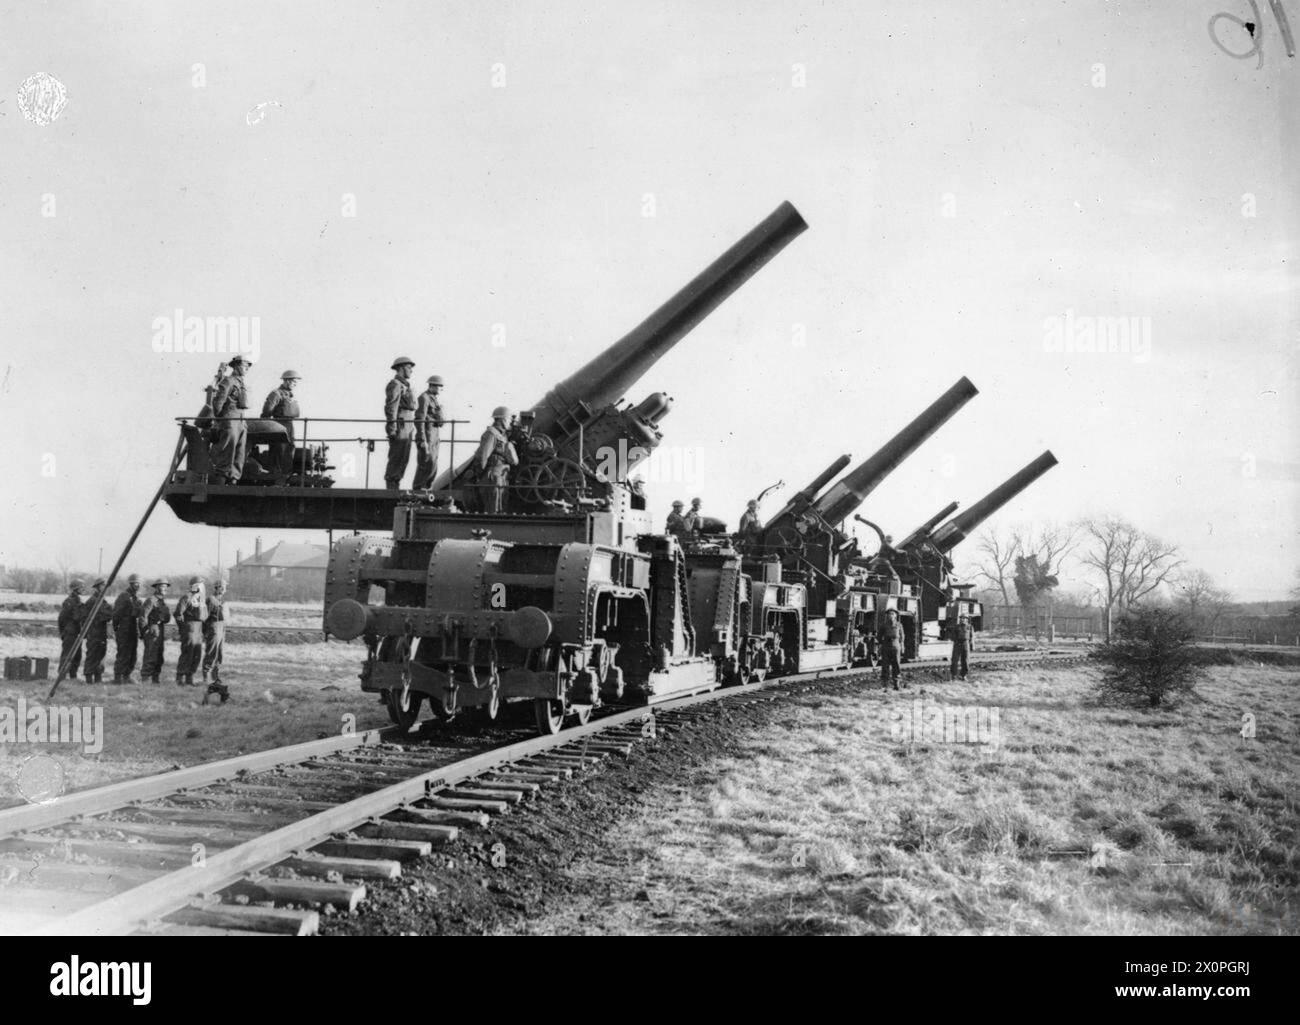 L'ARMÉE BRITANNIQUE AU ROYAUME-UNI 1939-45 - trois canons ferroviaires de 12 pouces à Catterick, 12 décembre 1940 Armée britannique, Royal Artillery Banque D'Images